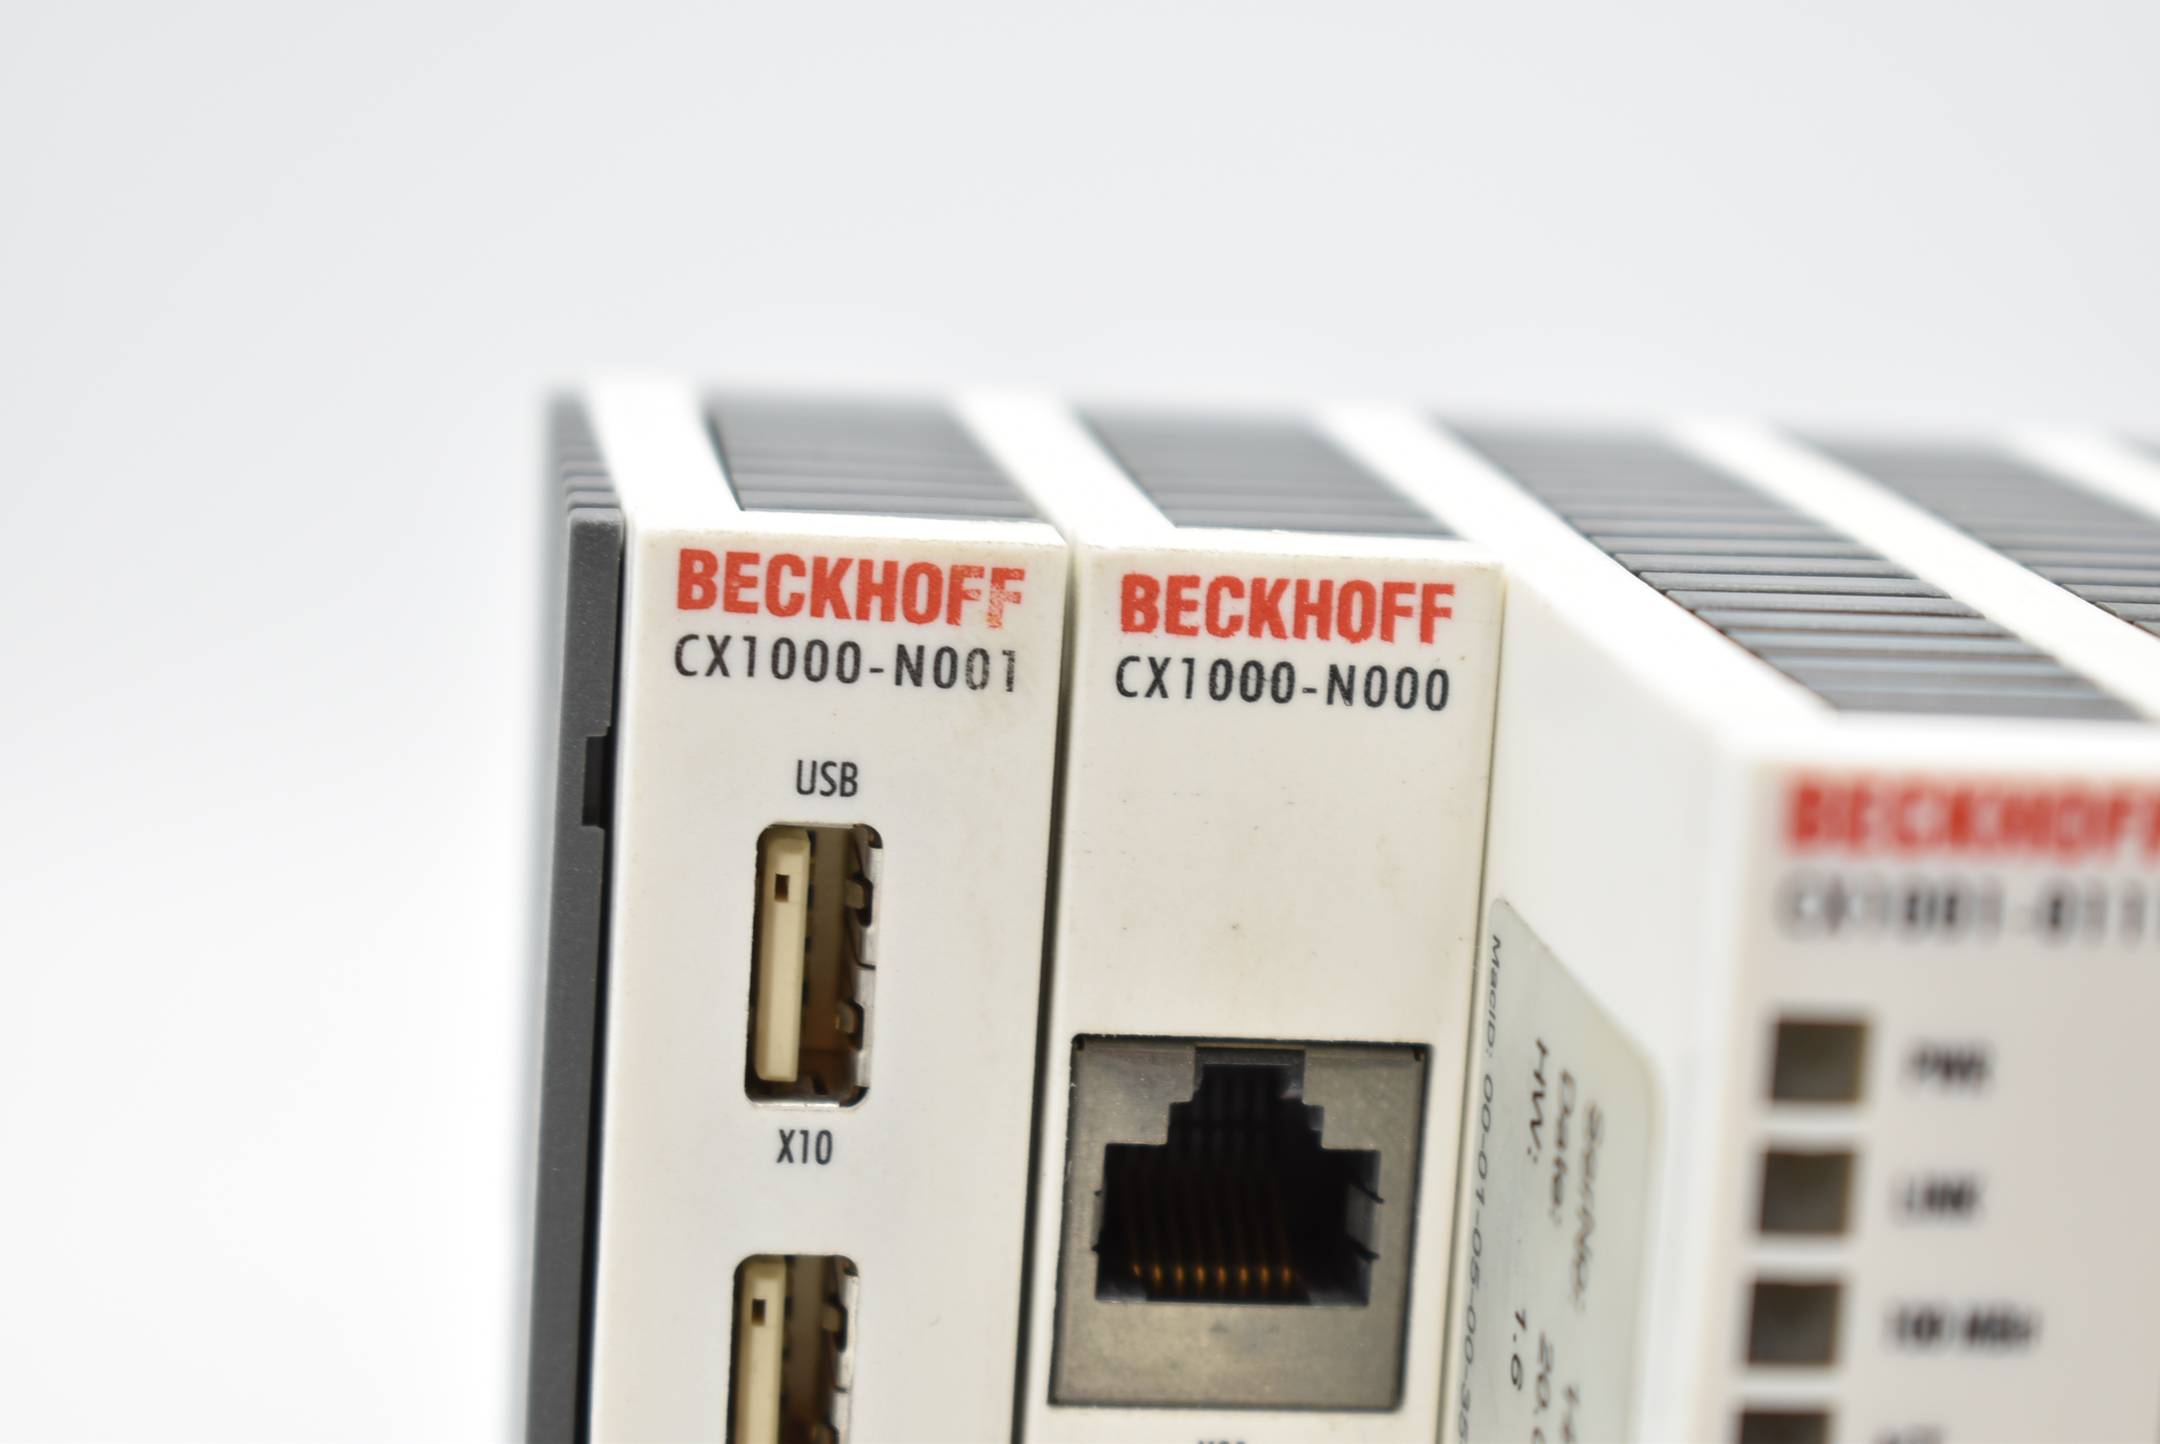 Beckhoff CX1100-0002 + CX1000-COOL + CX1001-0111 + CX1000-N000 + CX1000-N001